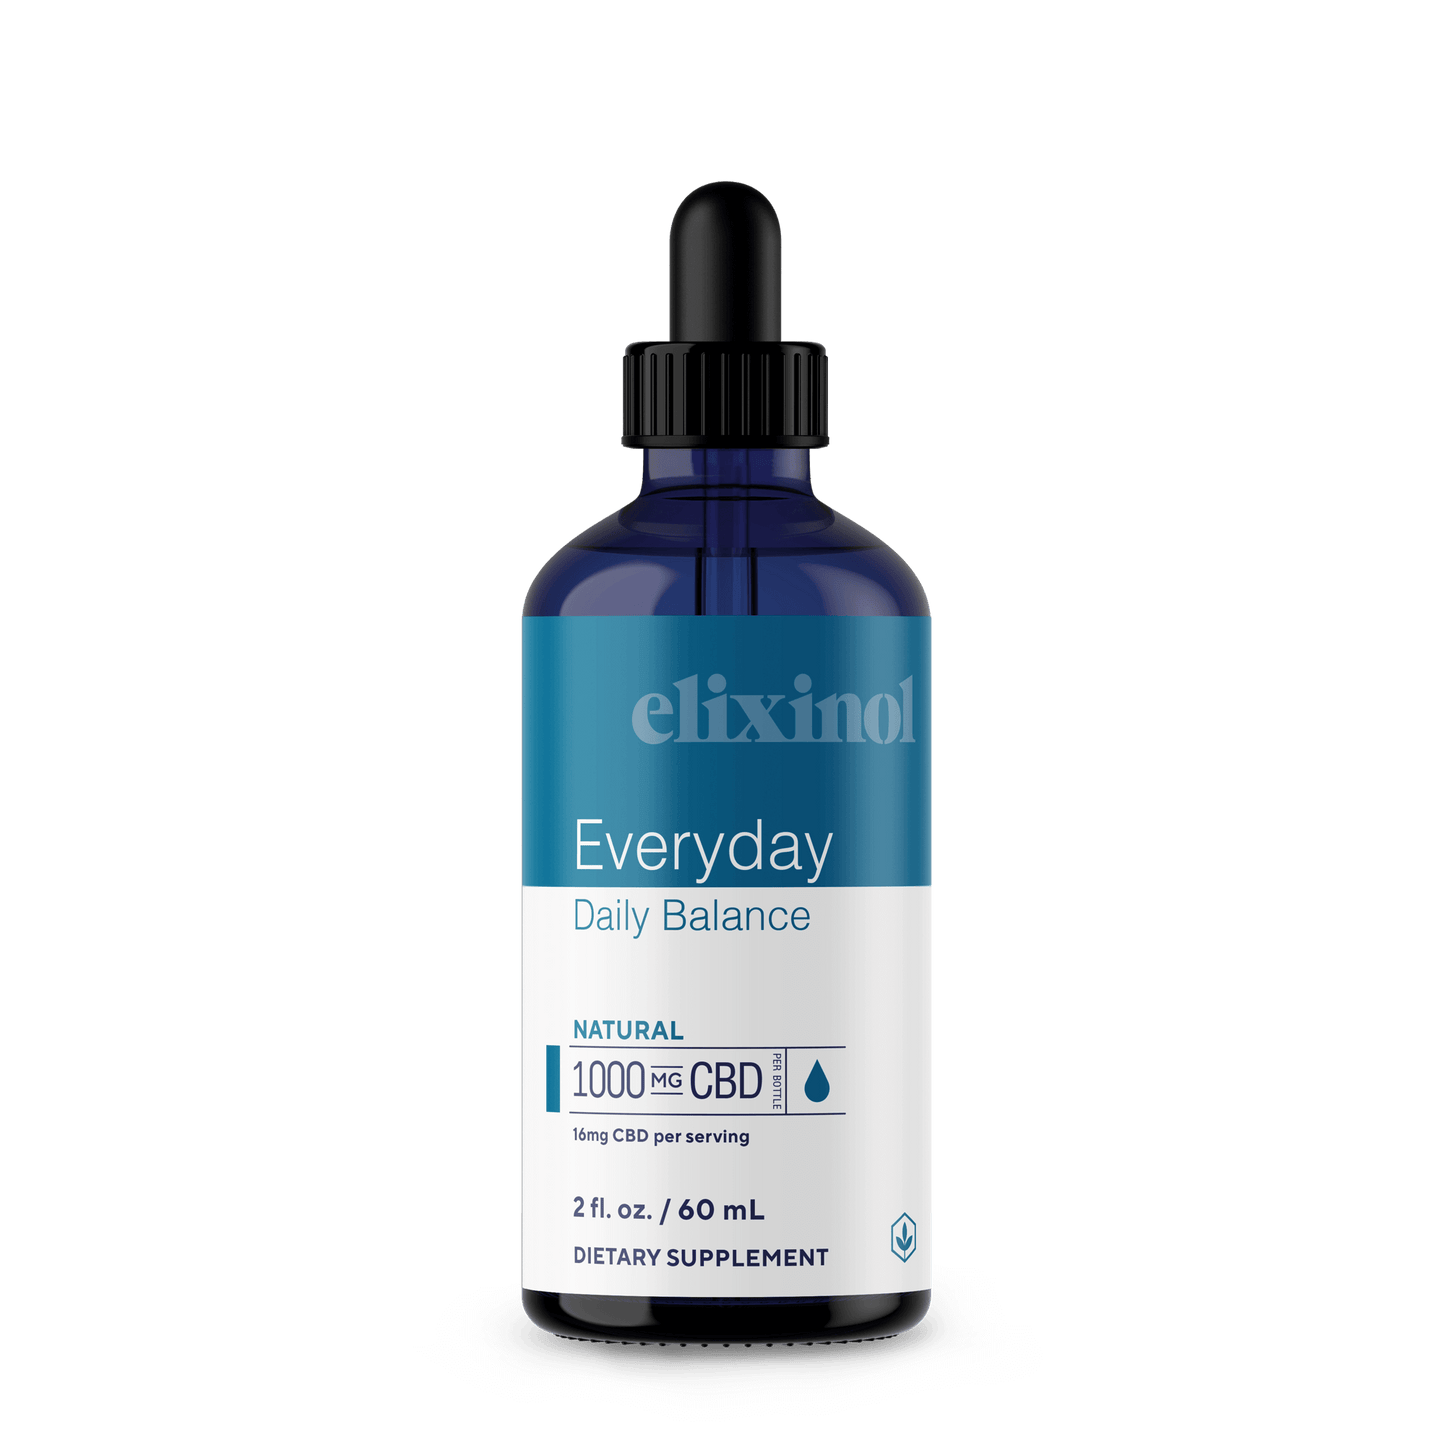 Elixinol Full Spectrum Tincture - Natural (a Tincture) made by Elixinol sold at CBD Emporium